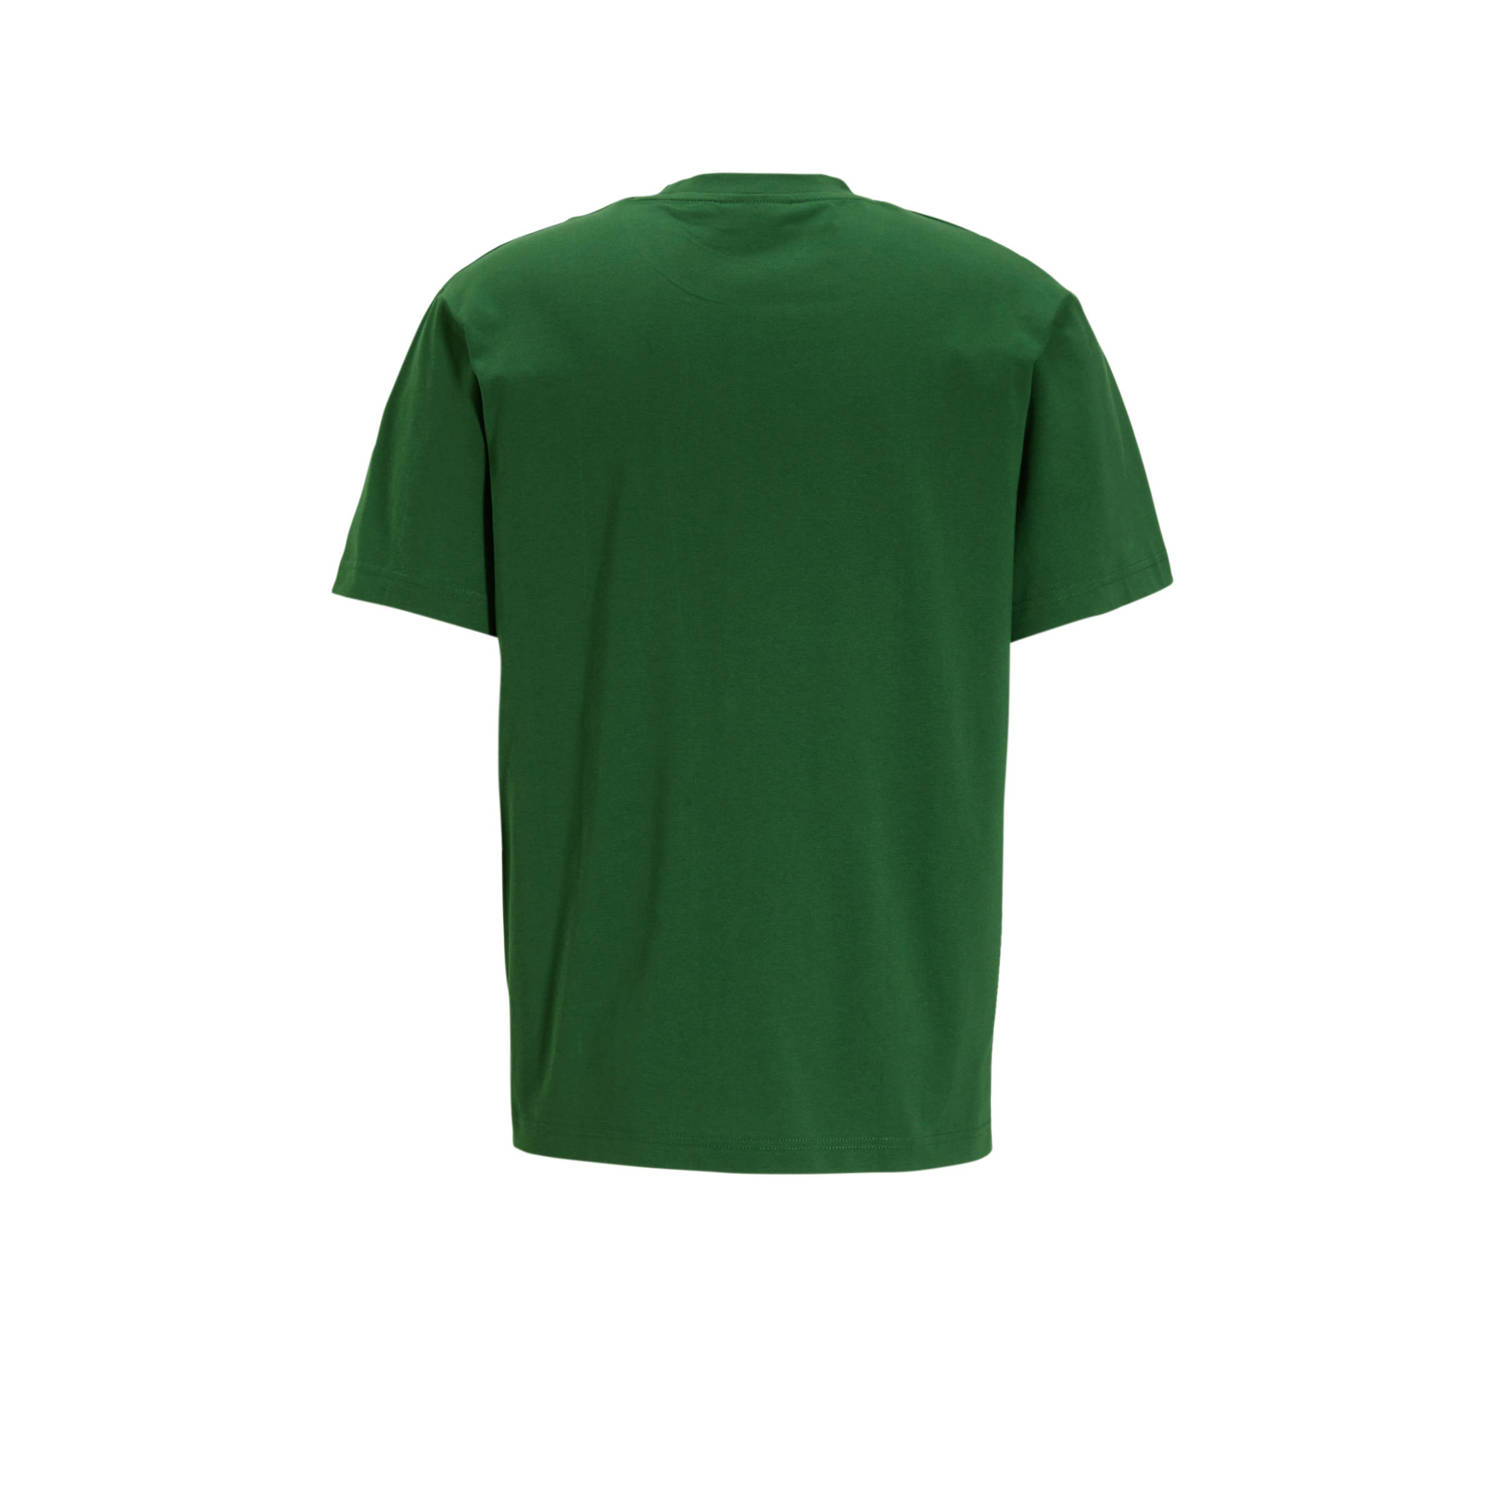 Lacoste T-shirt met logo groen